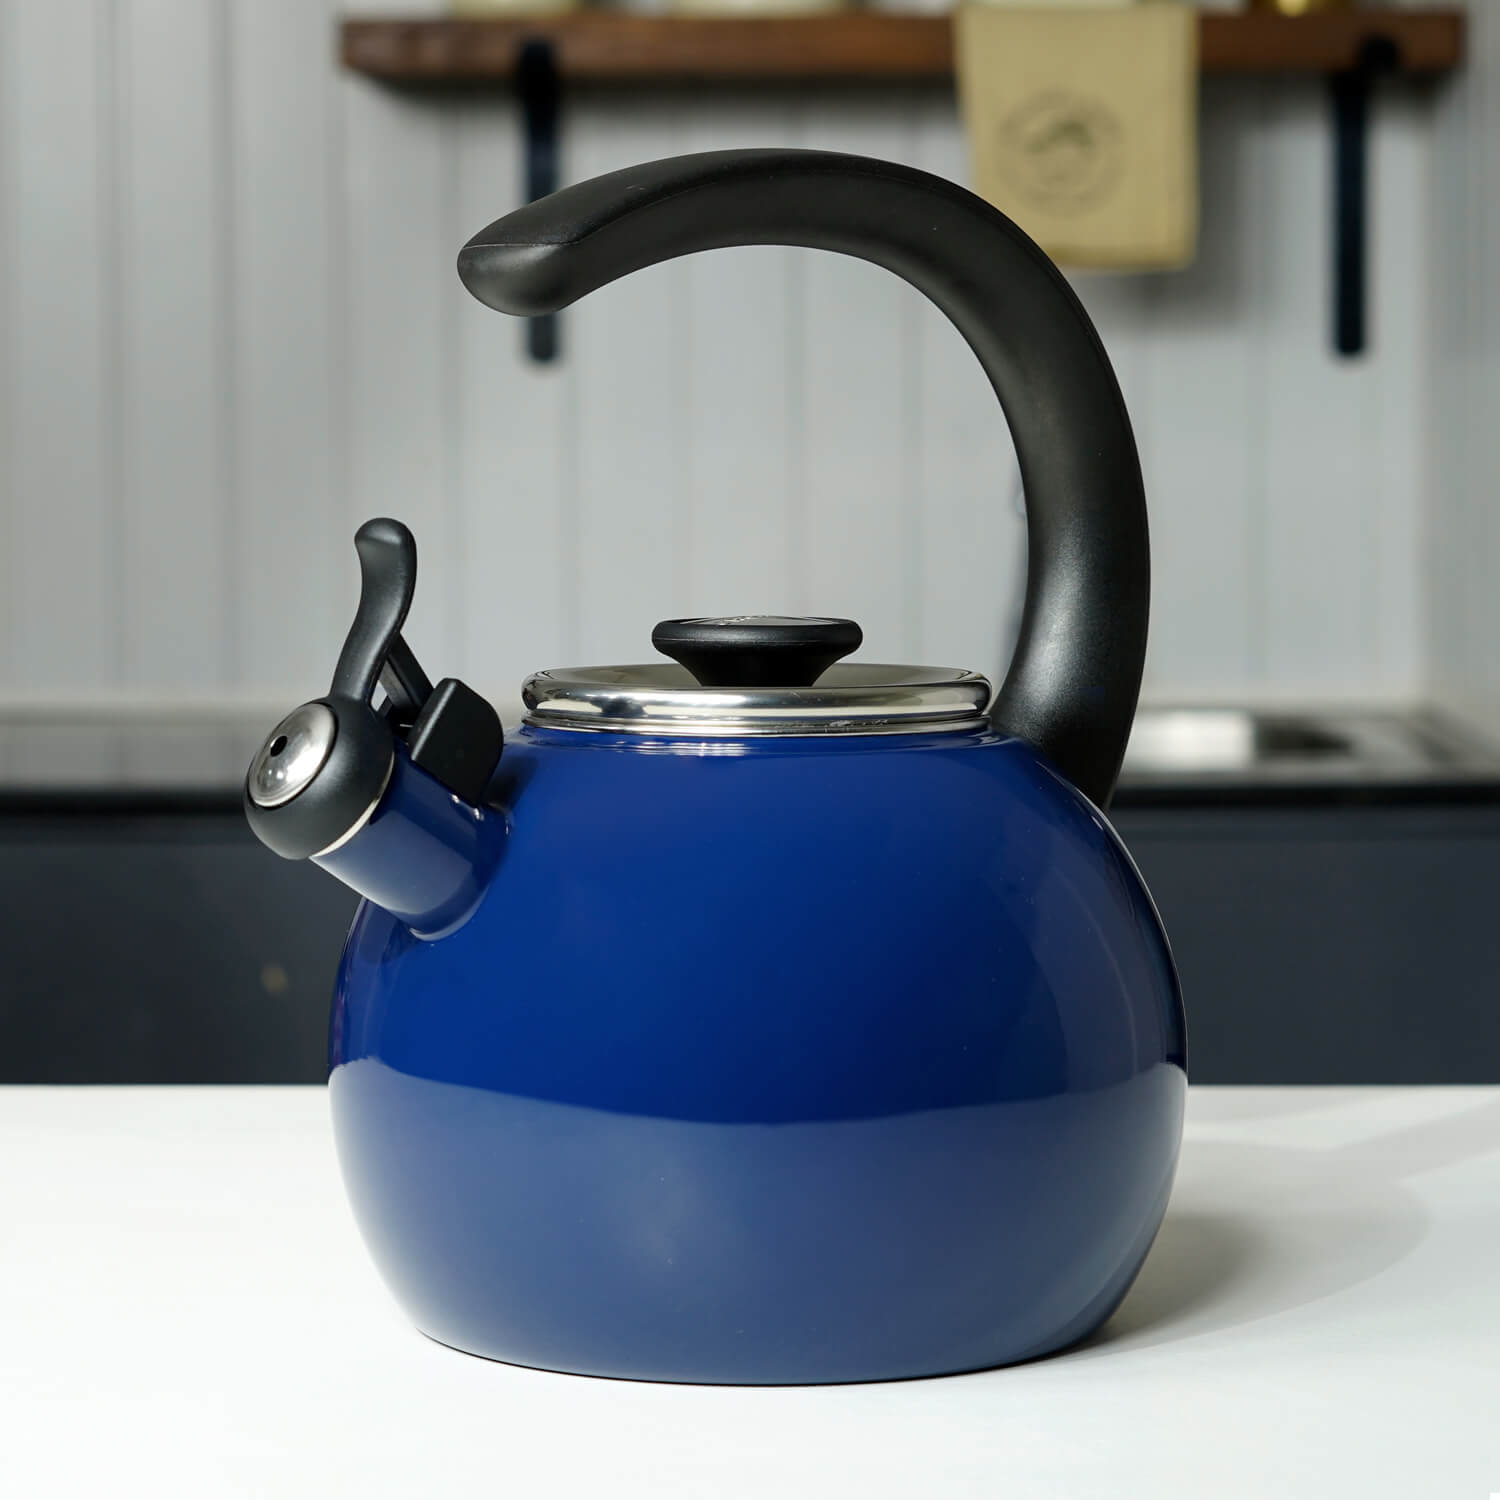 Circulon Tea kettle, 1.9 Litre, Navy